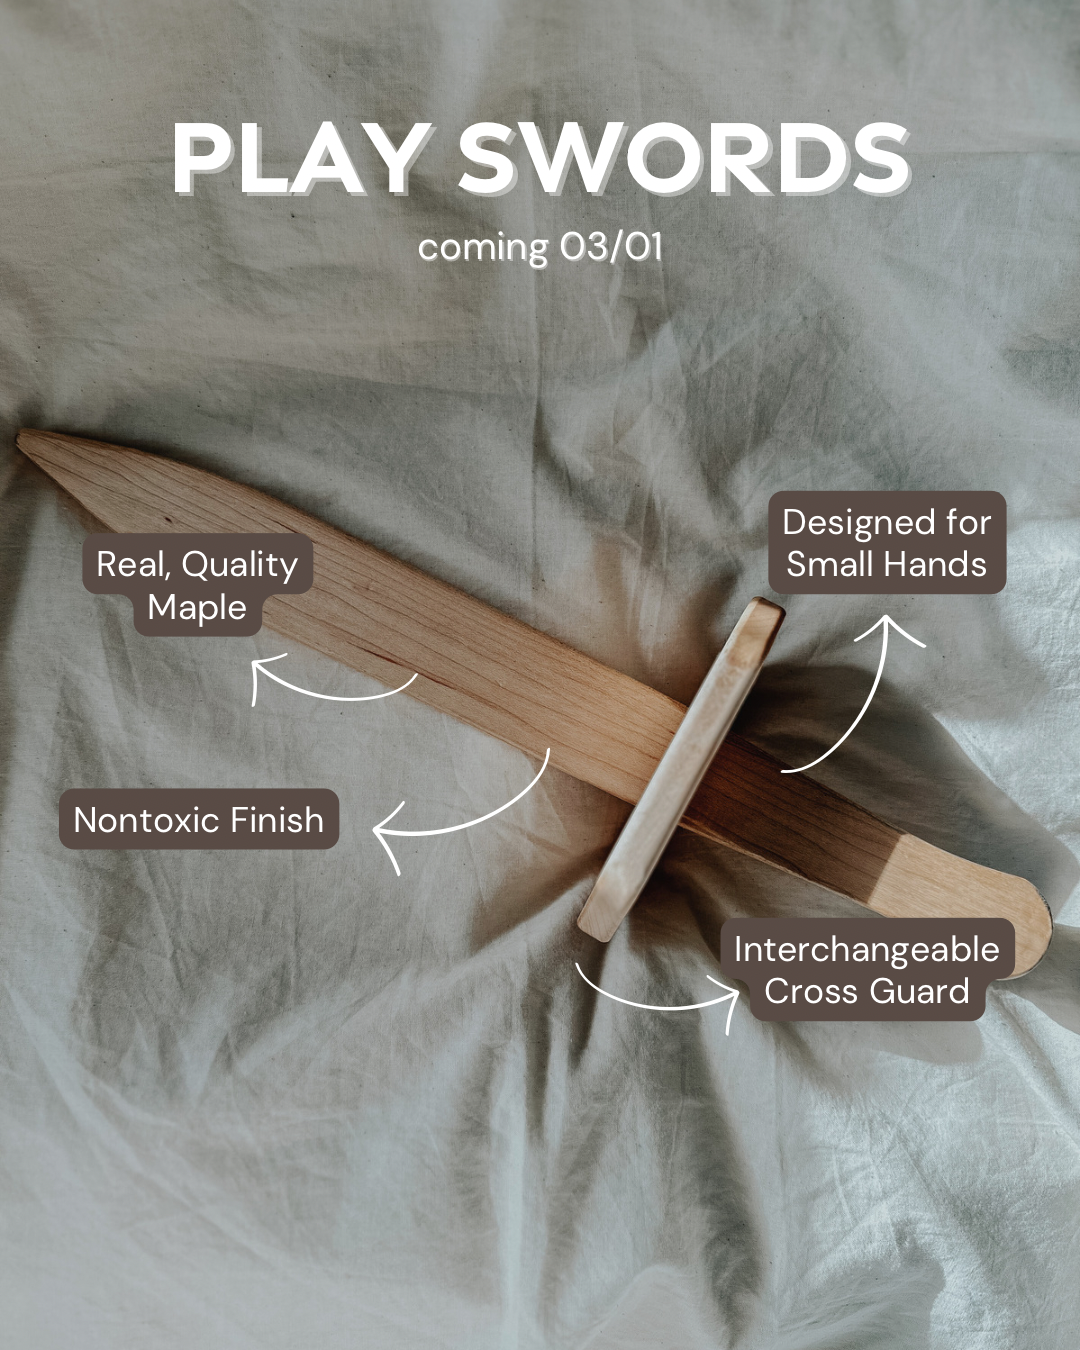 Play Swords